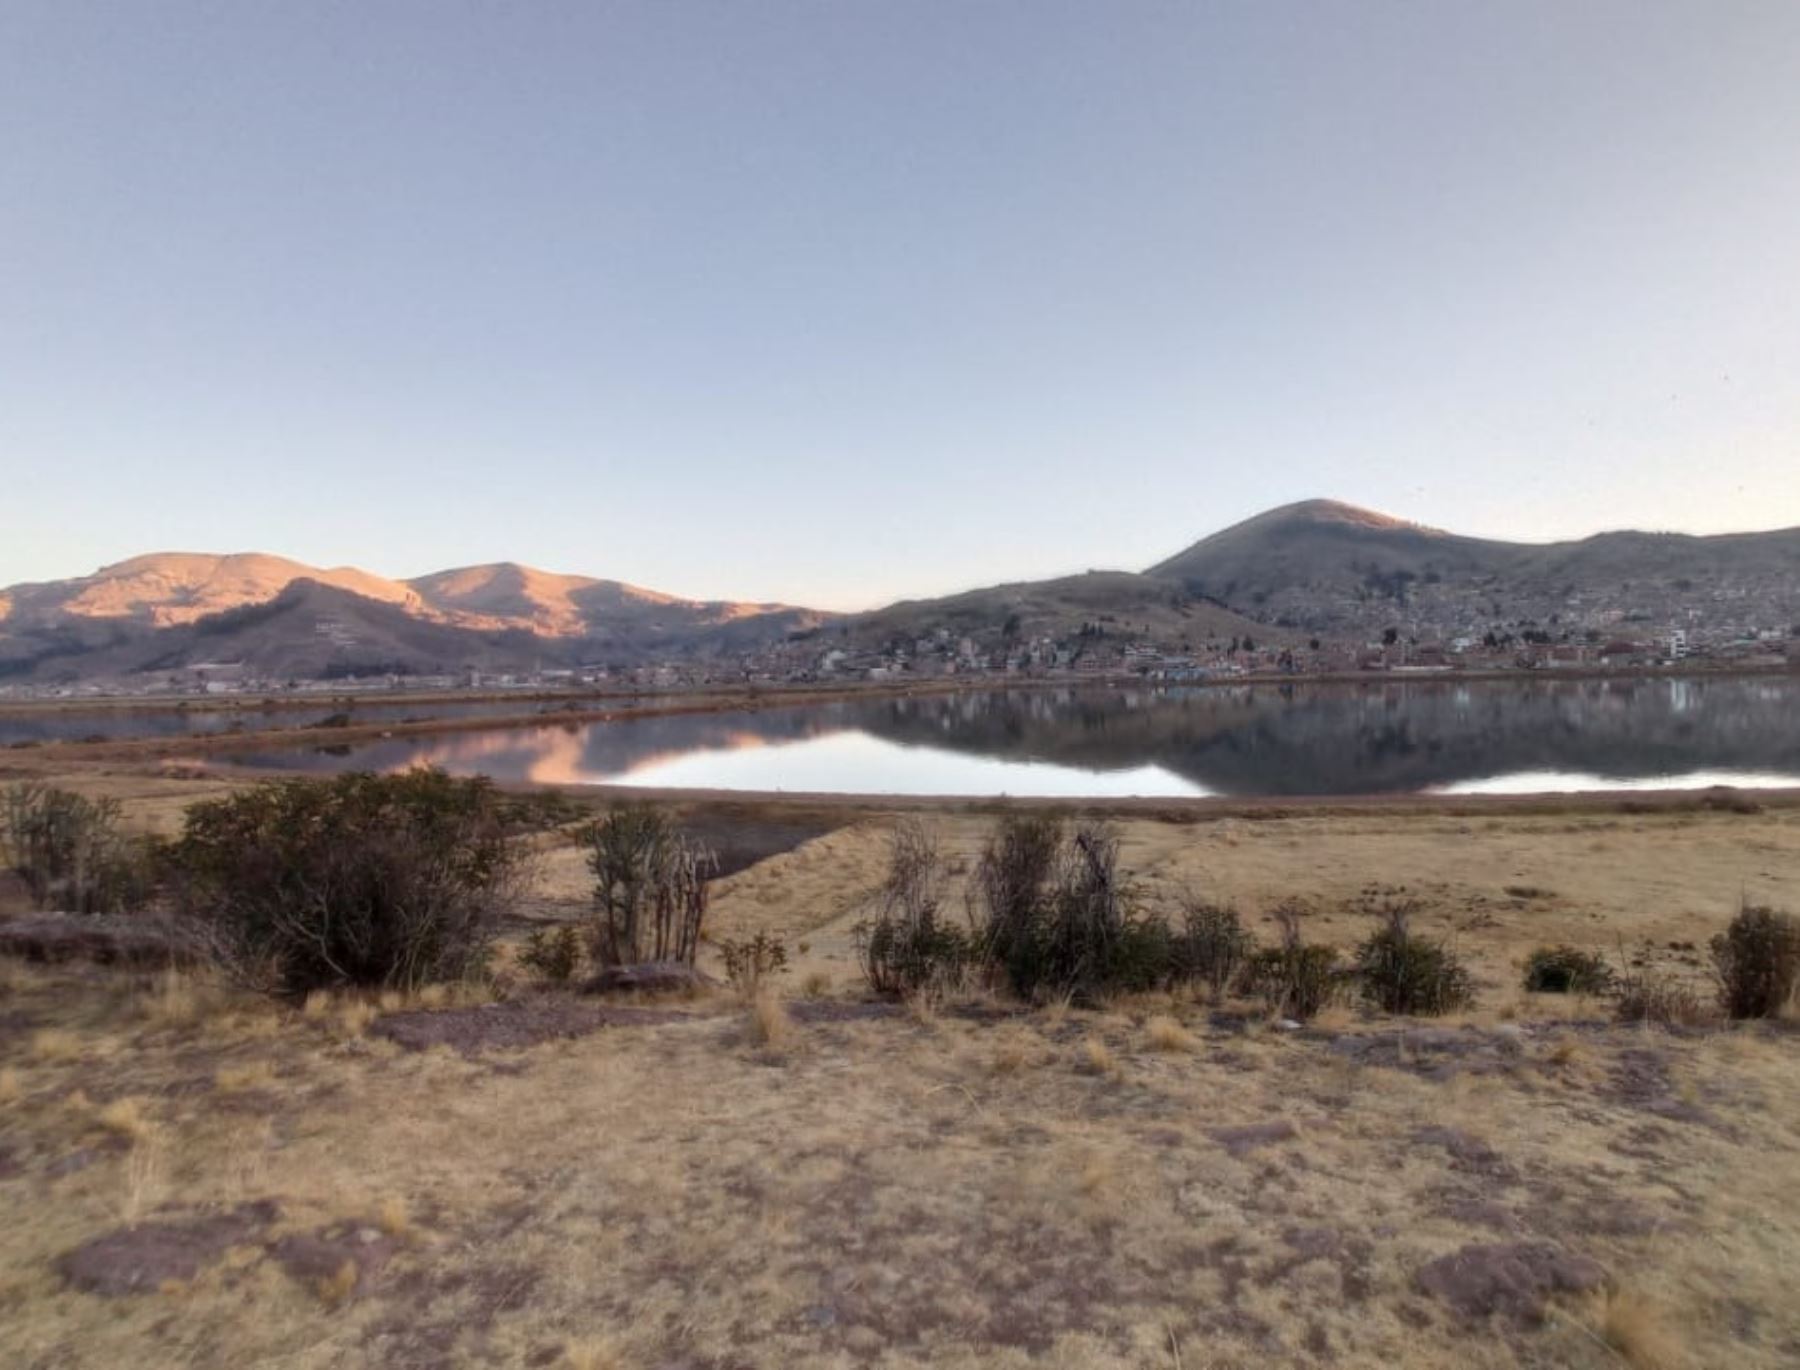 Alarma en Puno por el notorio descenso del nivel del agua del lago Titicaca debido a la ausencia de lluvias. En lo que va del año ha disminuido en 59 cm, informó el jefe del Senamhi Puno, Sixto Flores. Foto: Alberto Alejo.